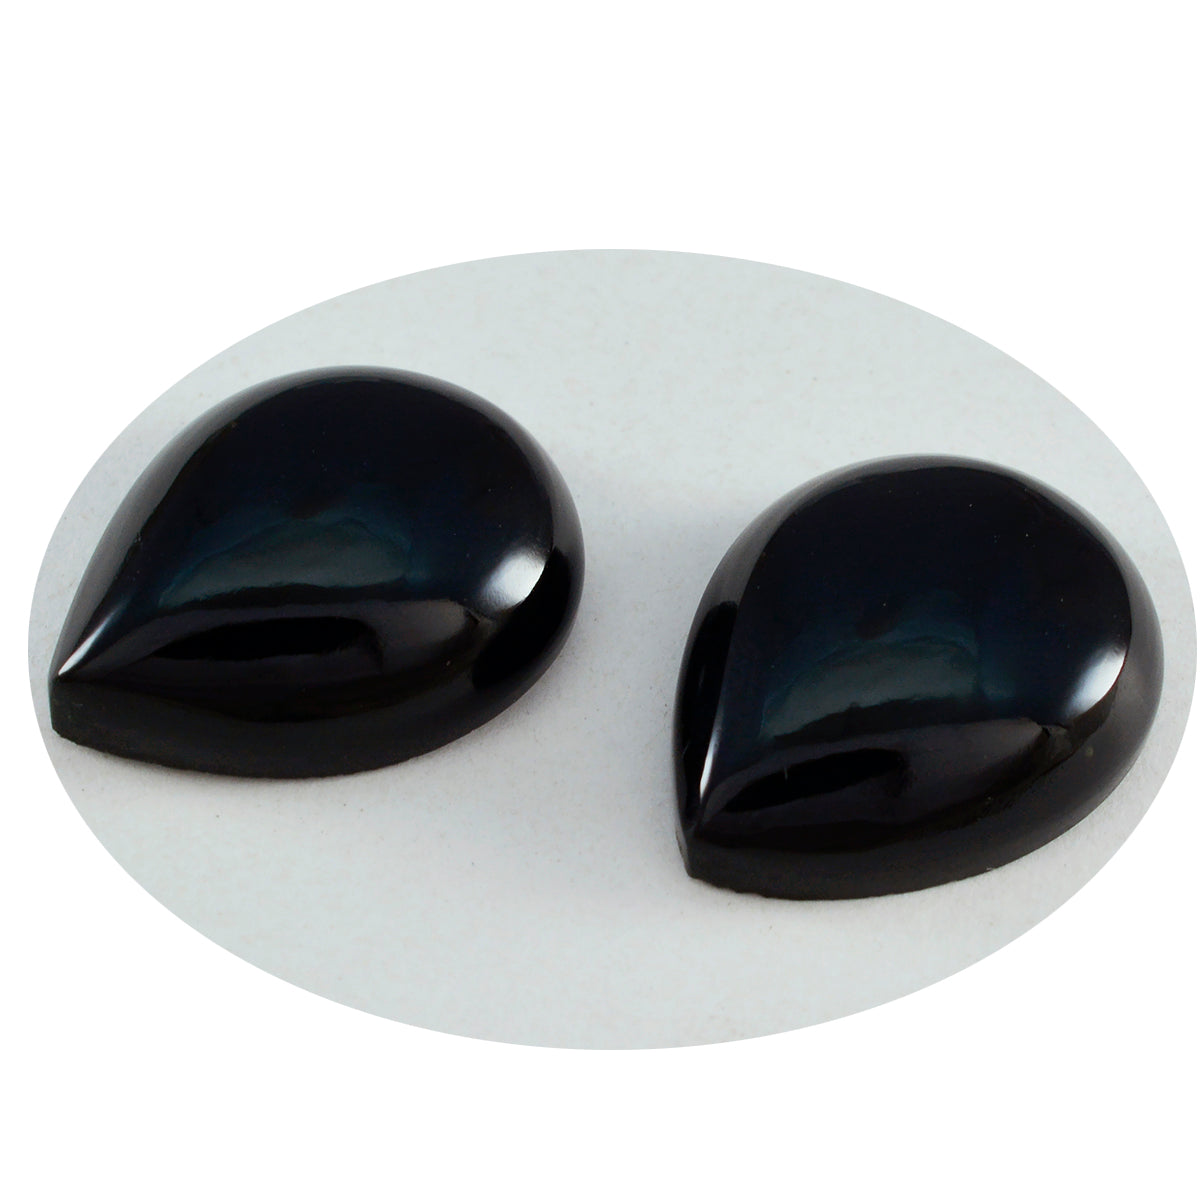 Riyogems 1 Stück schwarzer Onyx-Cabochon, 10 x 14 mm, Birnenform, ein Qualitätsstein